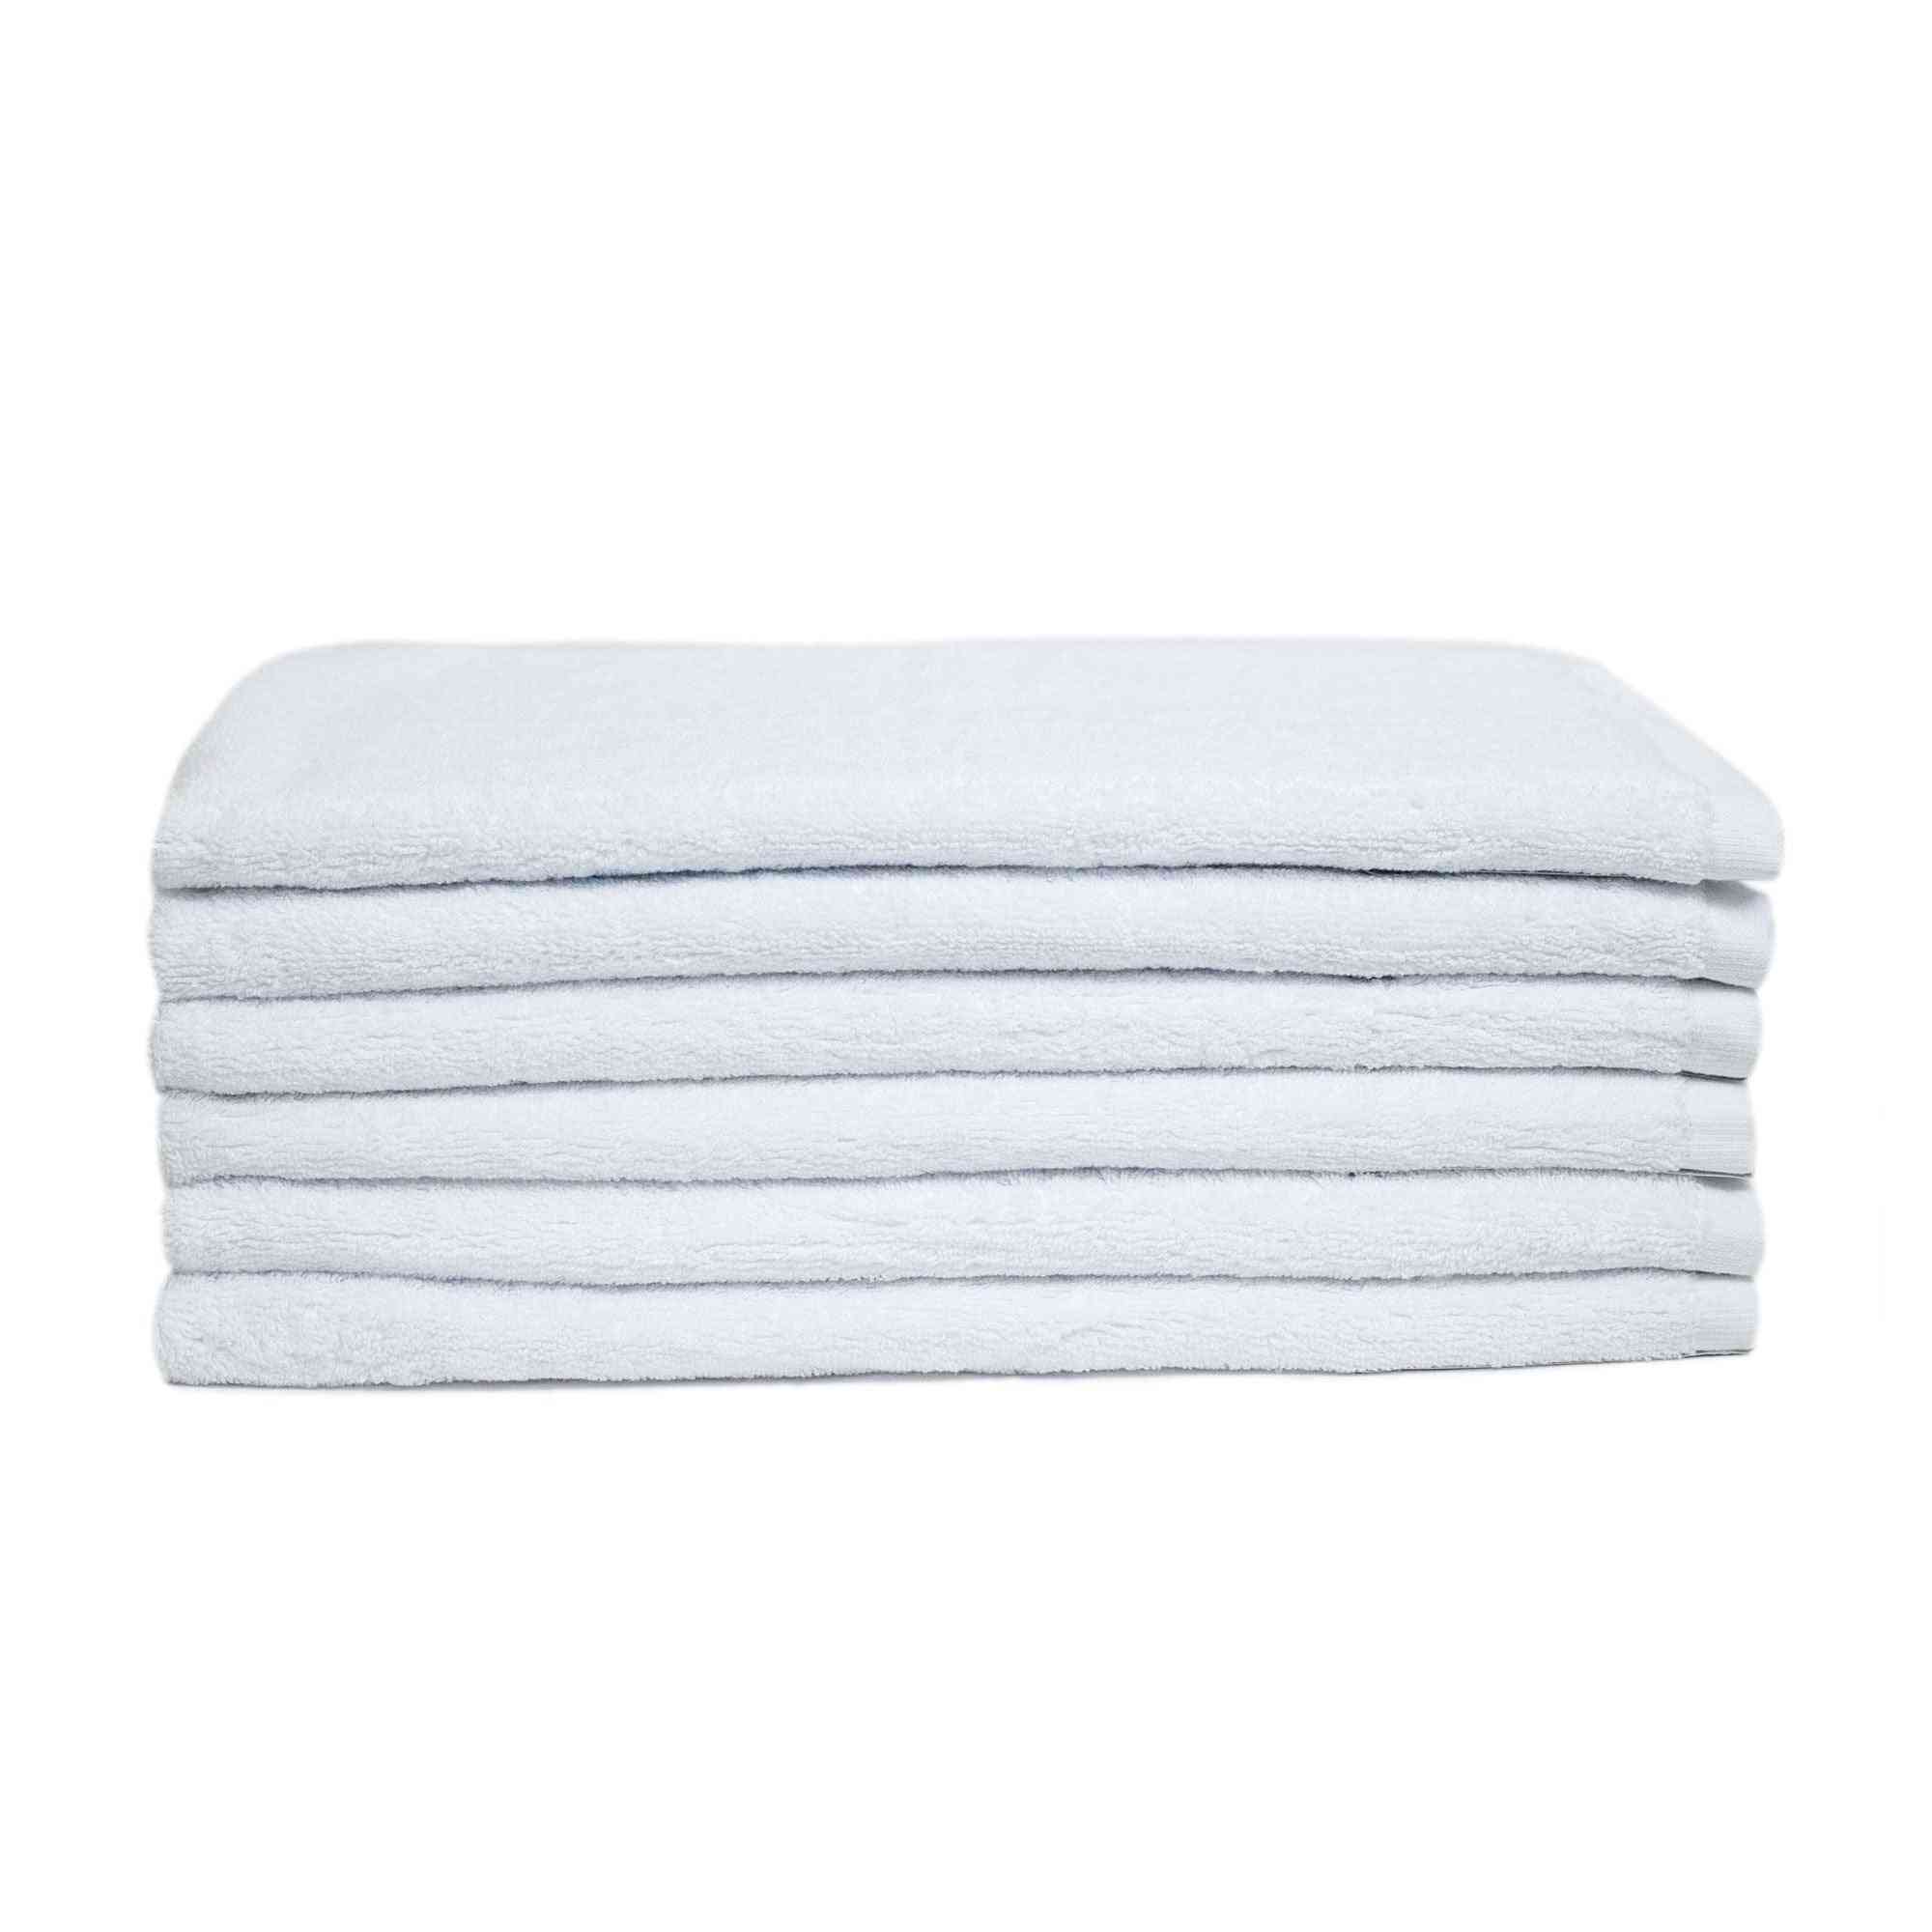 Premium Hand Towel Pack